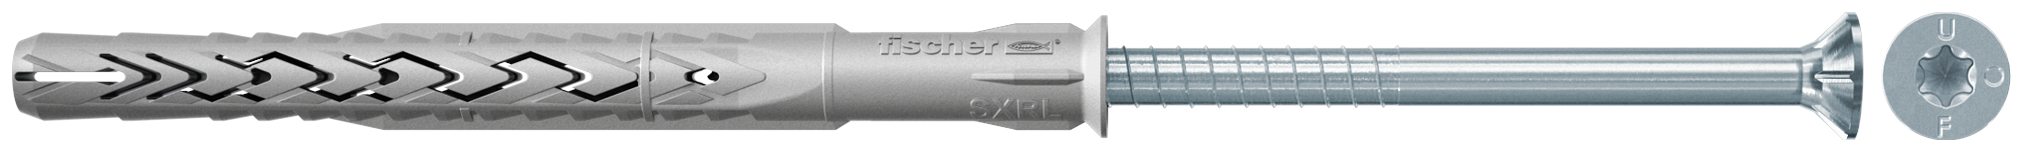 fischer Tasselli prolungati SXRL 14X160 T (1 Pz.) Tassello prolungato in nylon con marcatura CE con vite premontata T.S.P. impronta torx.